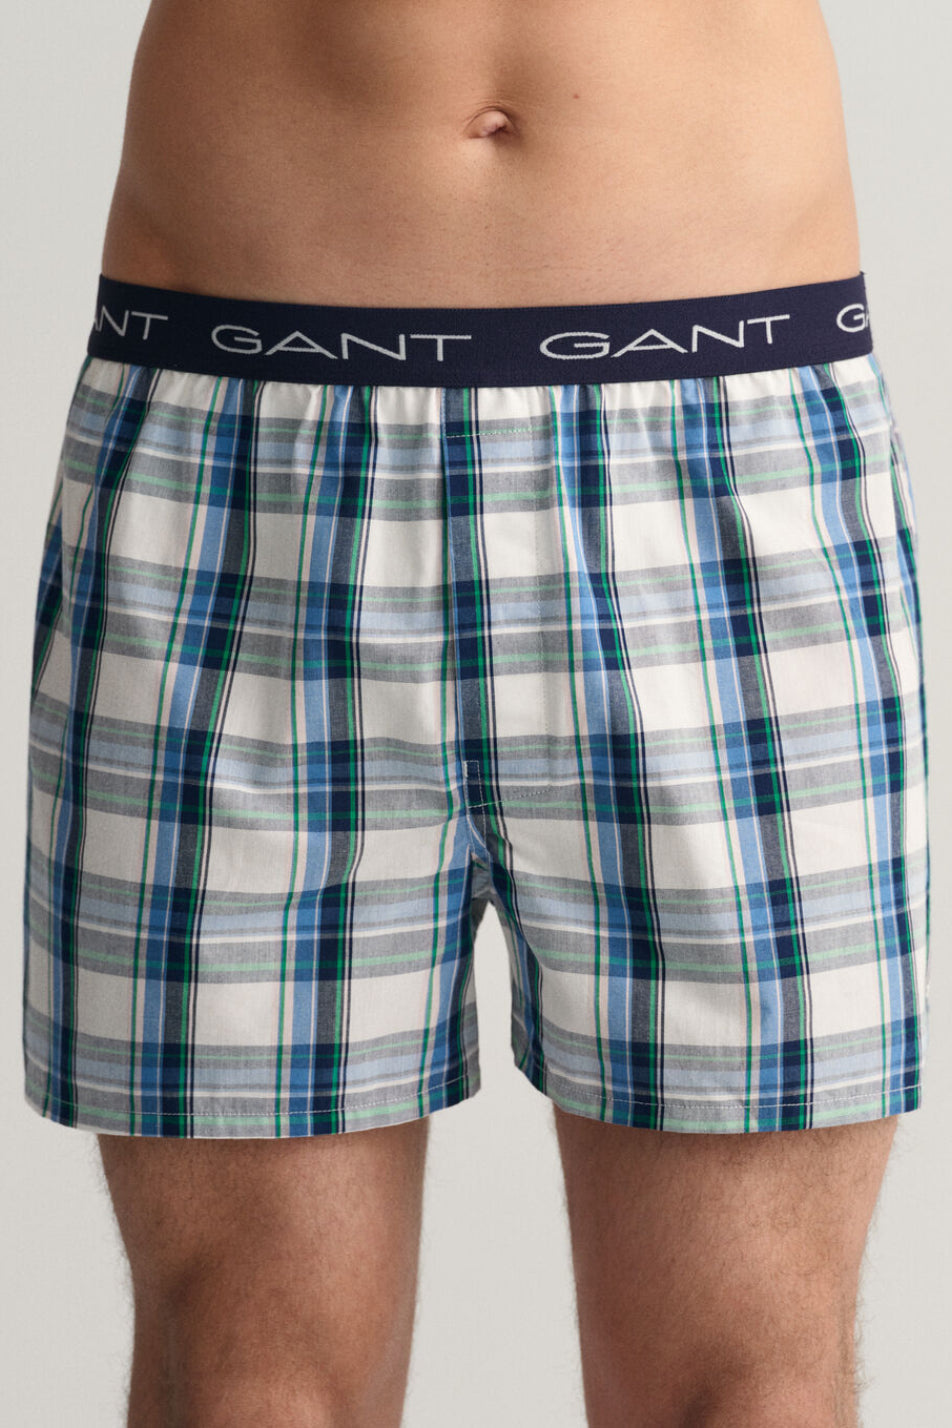 Gant 2 Pack Men's Stripe & Check Boxer Shorts